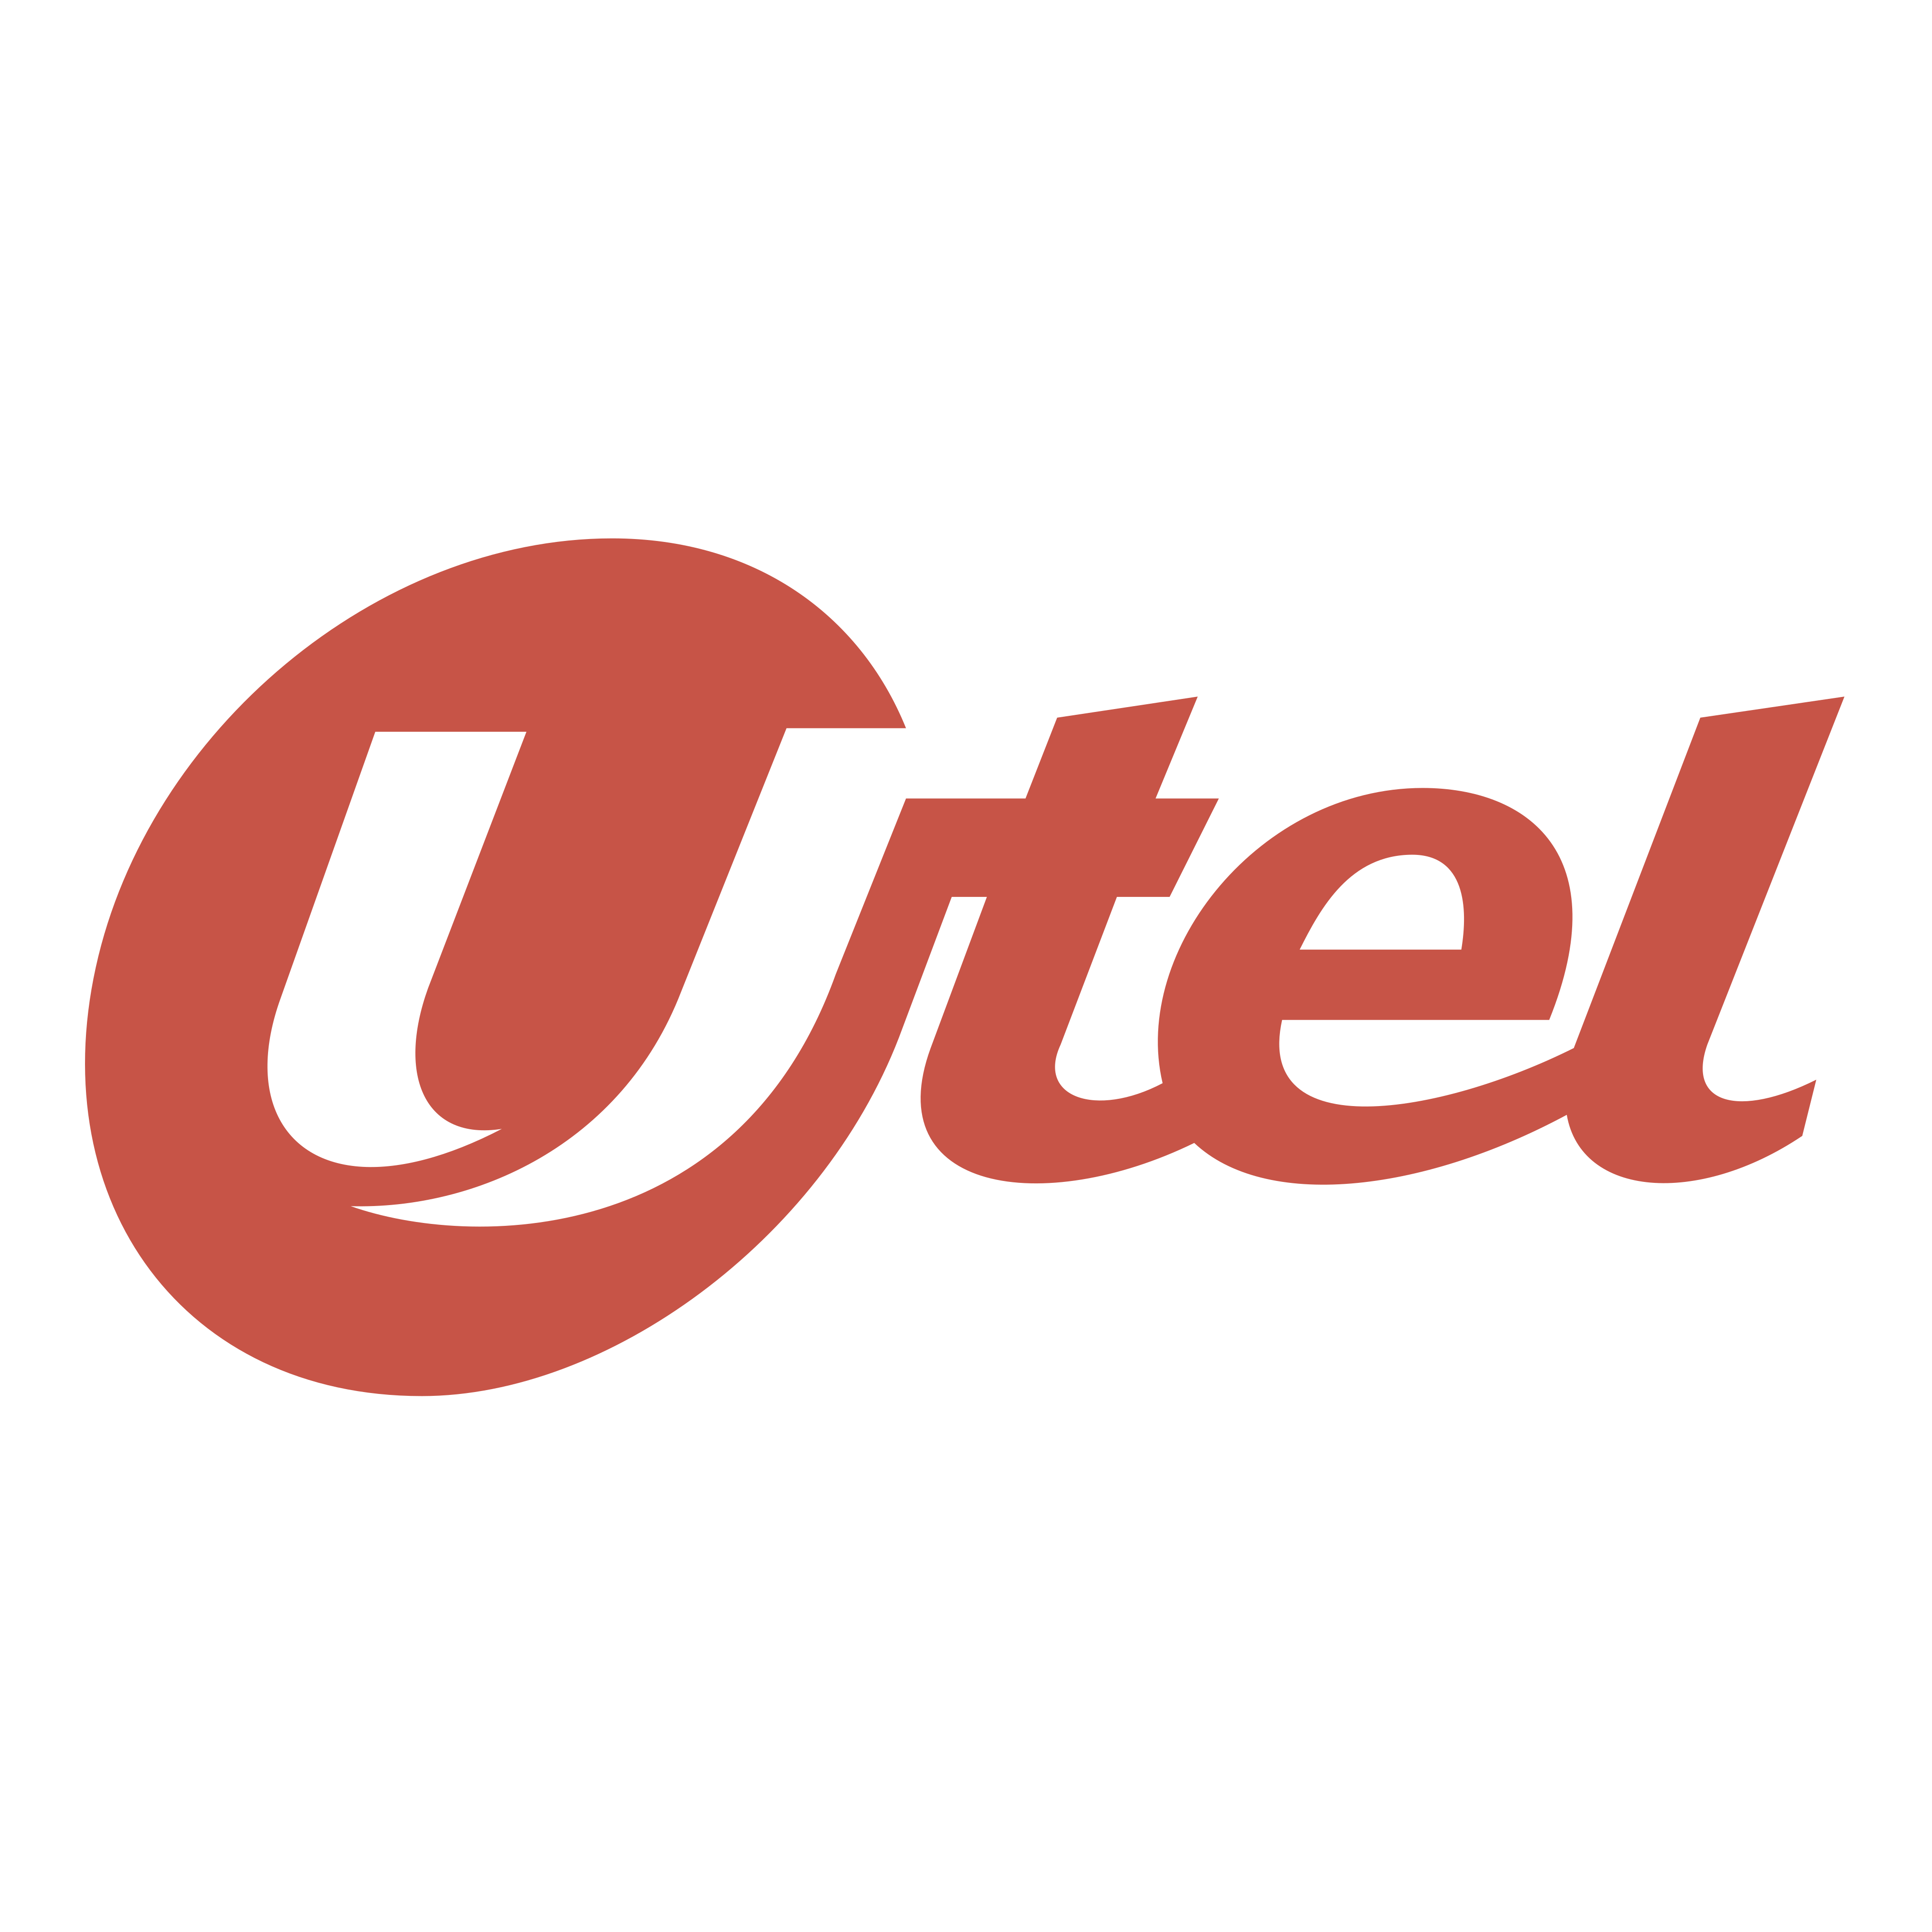 S tel ru. Ютел. UTEL лого. Ютел сотовая связь. Старый логотип ютел.